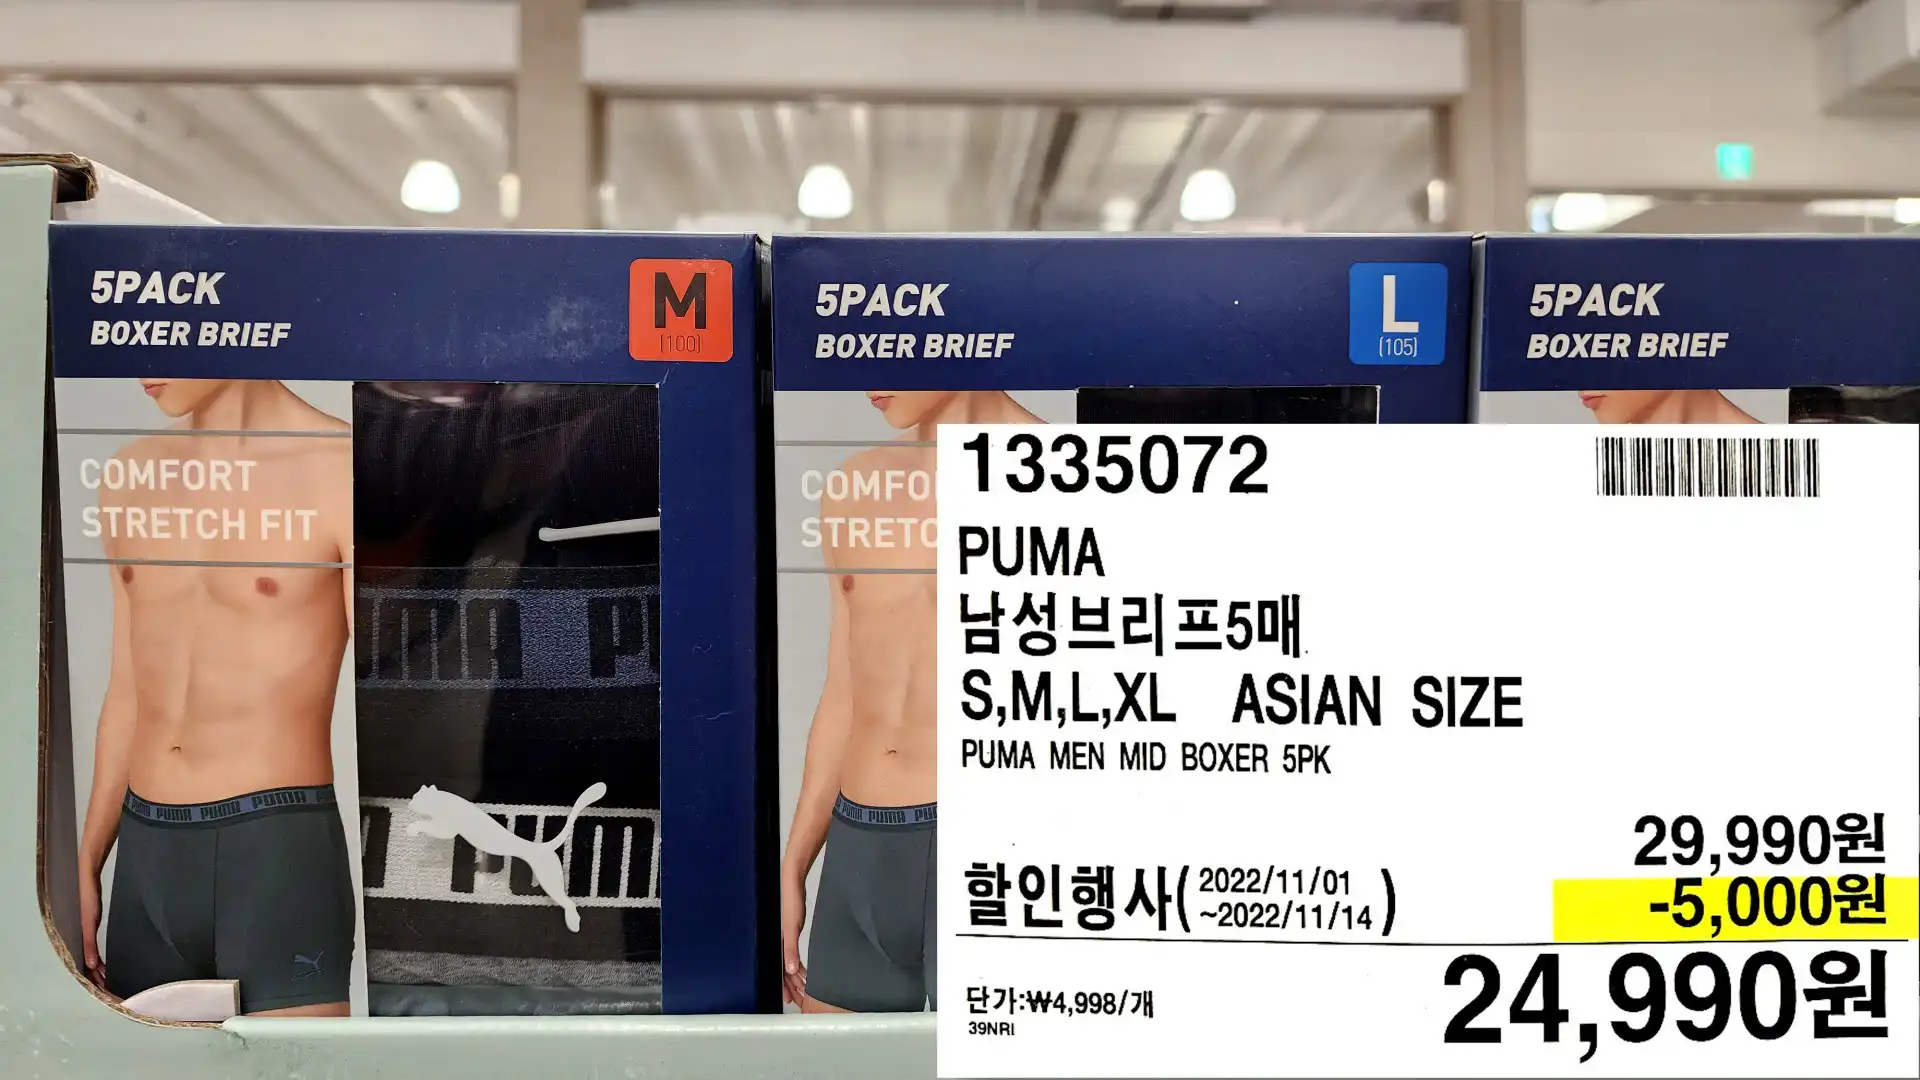 PUMA
남성브리프5매
S,M,L,XL ASIAN SIZE
PUMA MEN MID BOXER 5PK
할인행사(2002/11/14)
24,990원